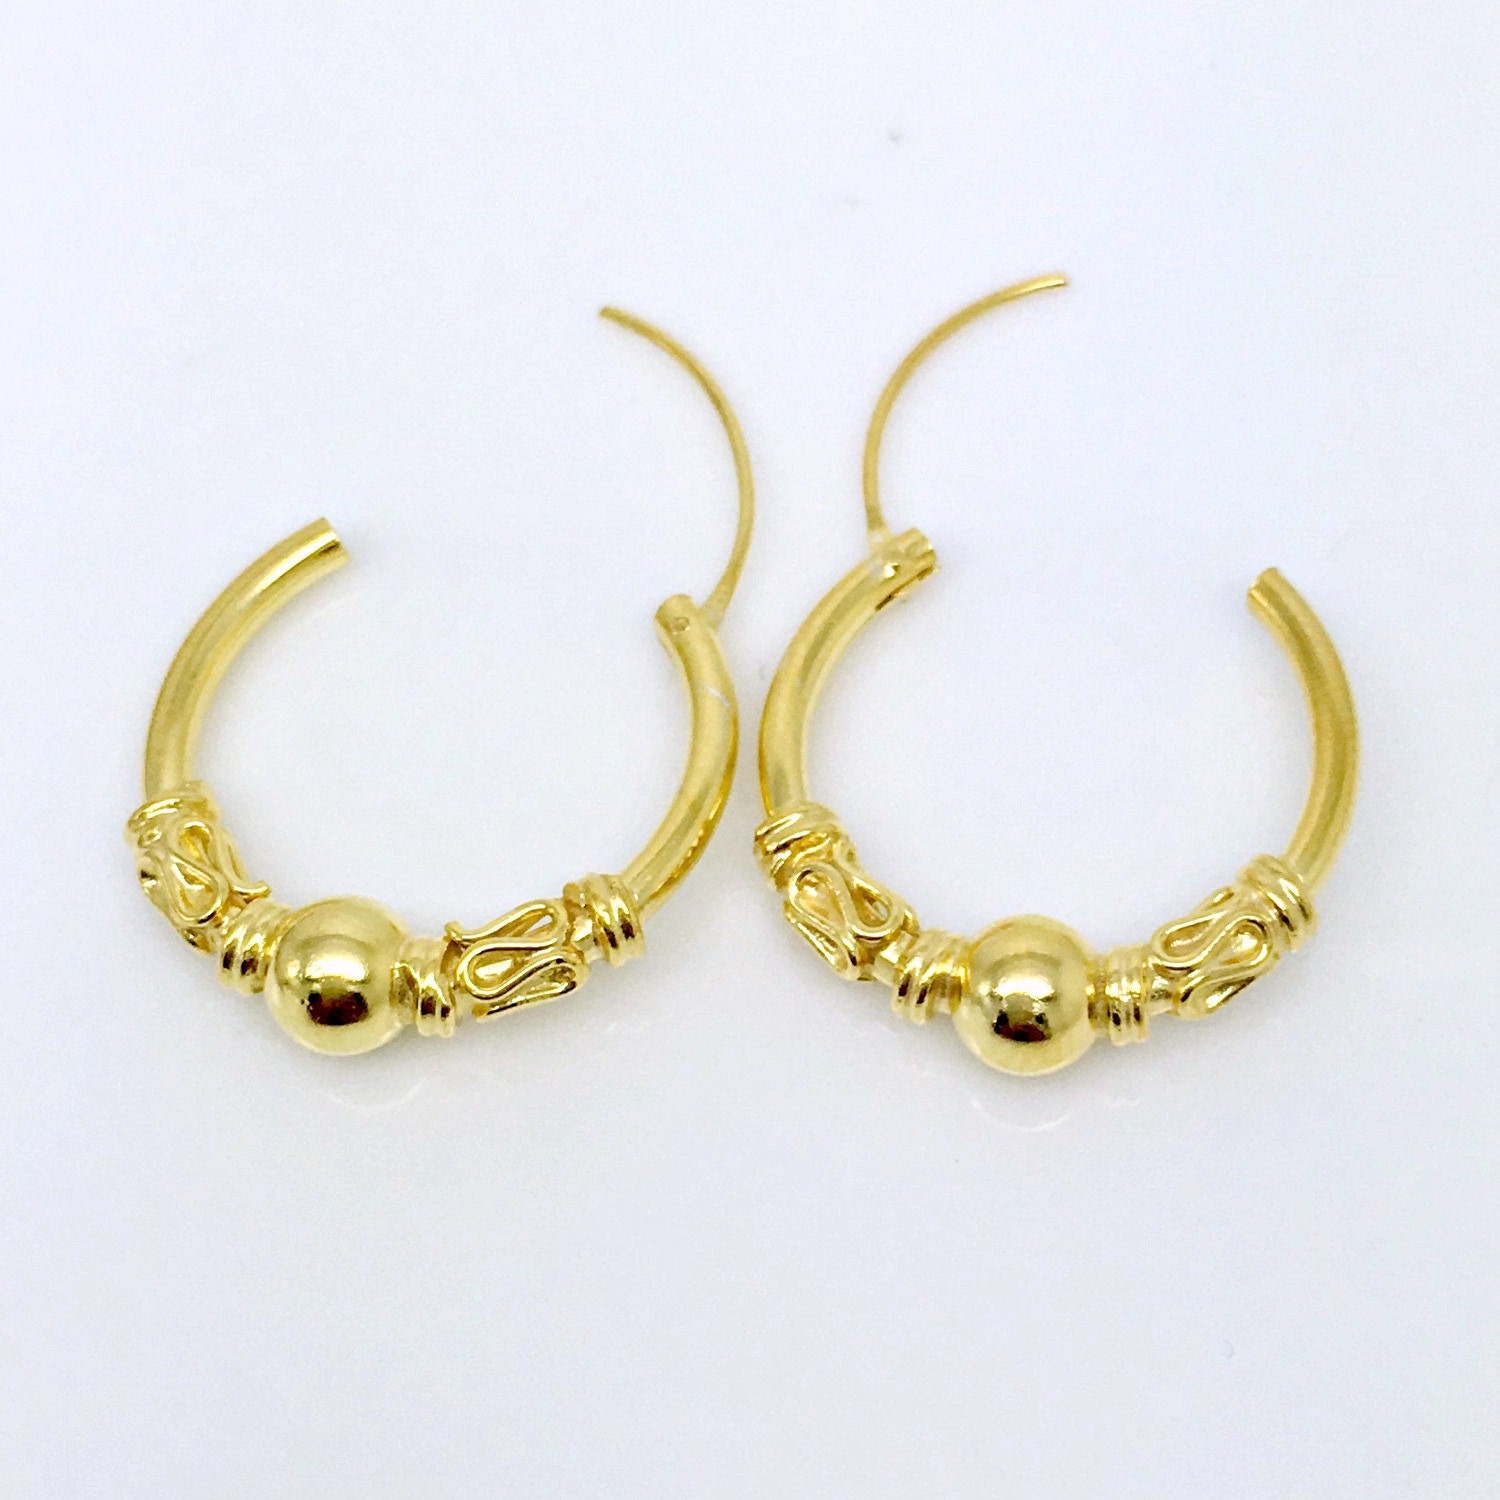 Sunlit gold hoop earrings men's earrings sphere wire